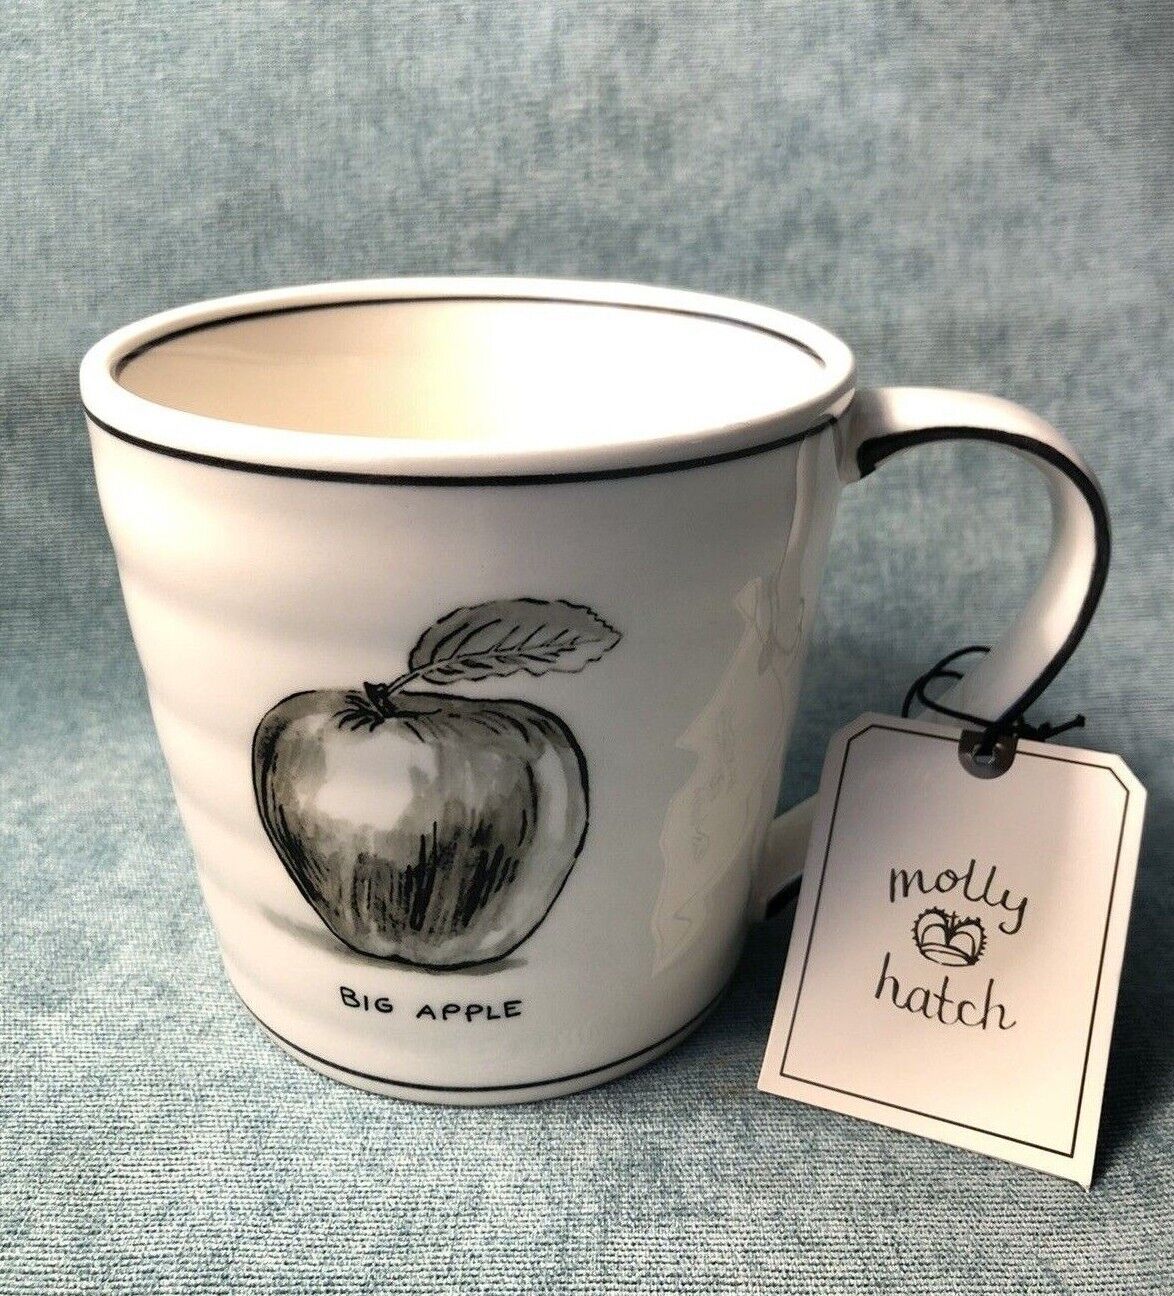 Molly Hatch Anthropologie NYC New York Big Apple NWT Ceramic Coffee Mug Tea